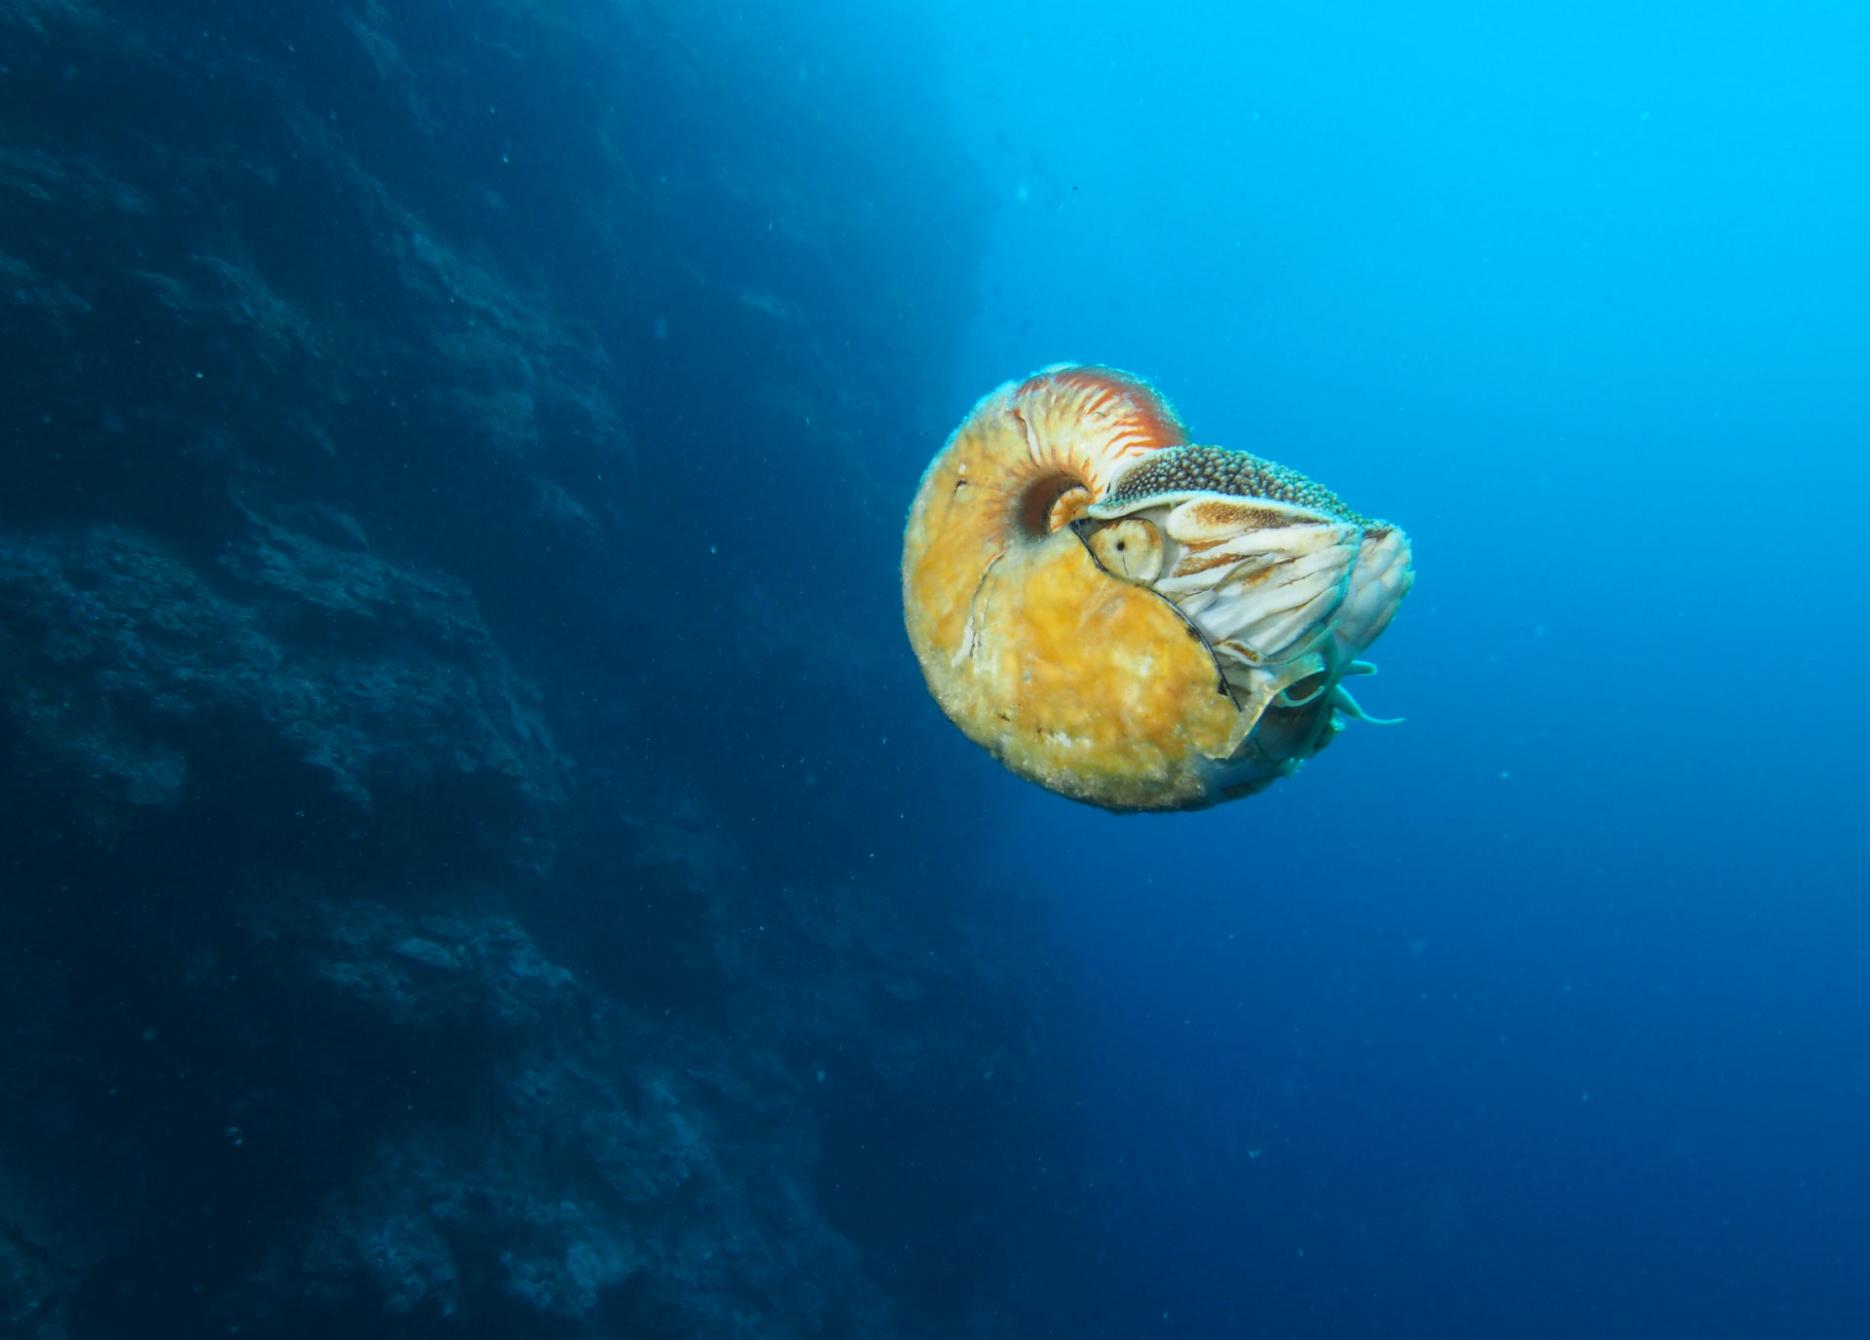 美国科学家海底发现超稀有海洋生物活化石异鹦鹉螺(Allonautilus scrobiculatus)